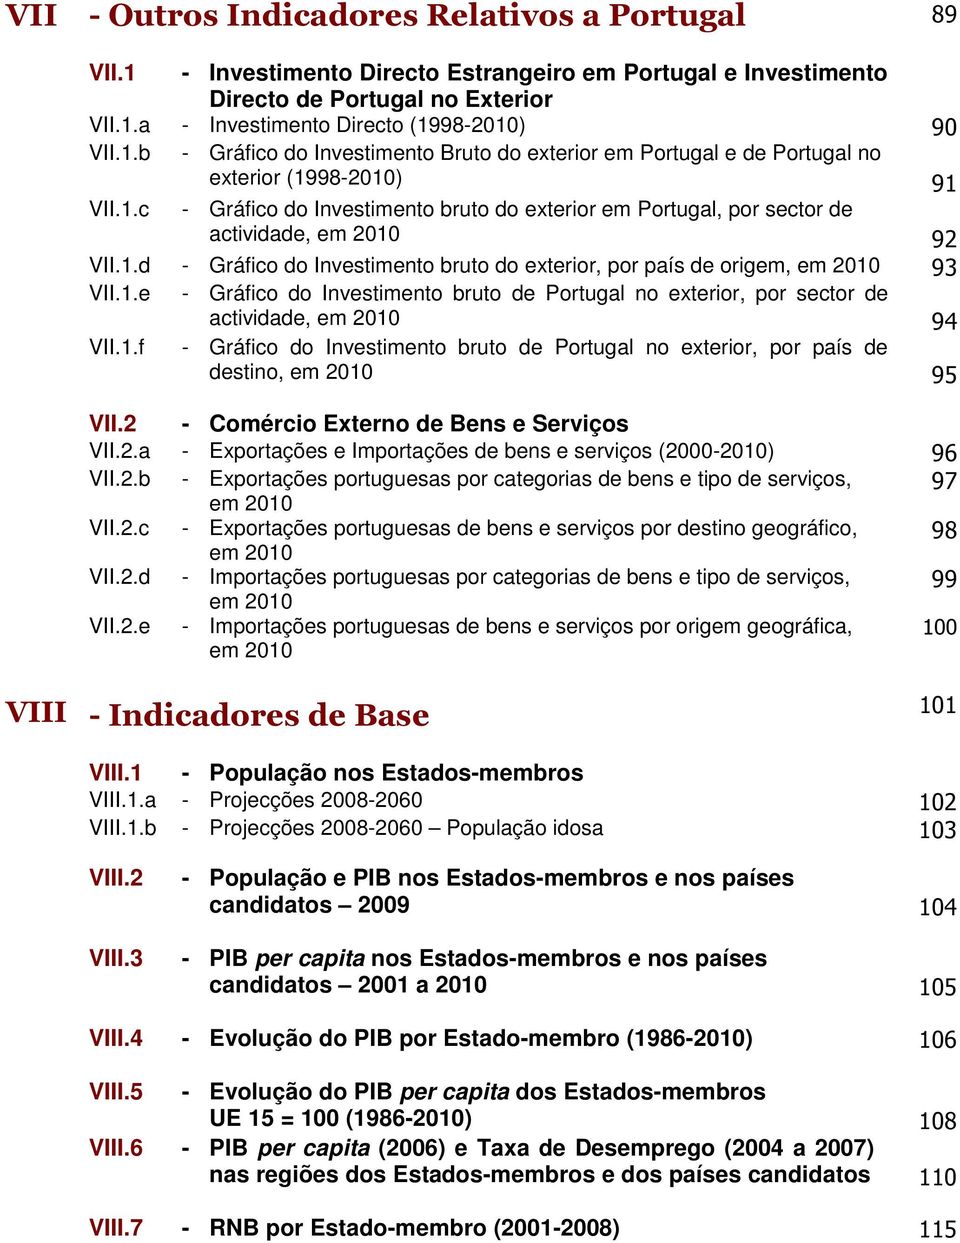 1.d - Gráfico do Investimento bruto do exterior, por país de origem, em 2010 93 VII.1.e - Gráfico do Investimento bruto de Portugal no exterior, por sector de actividade, em 2010 94 VII.1.f - Gráfico do Investimento bruto de Portugal no exterior, por país de destino, em 2010 95 VII.